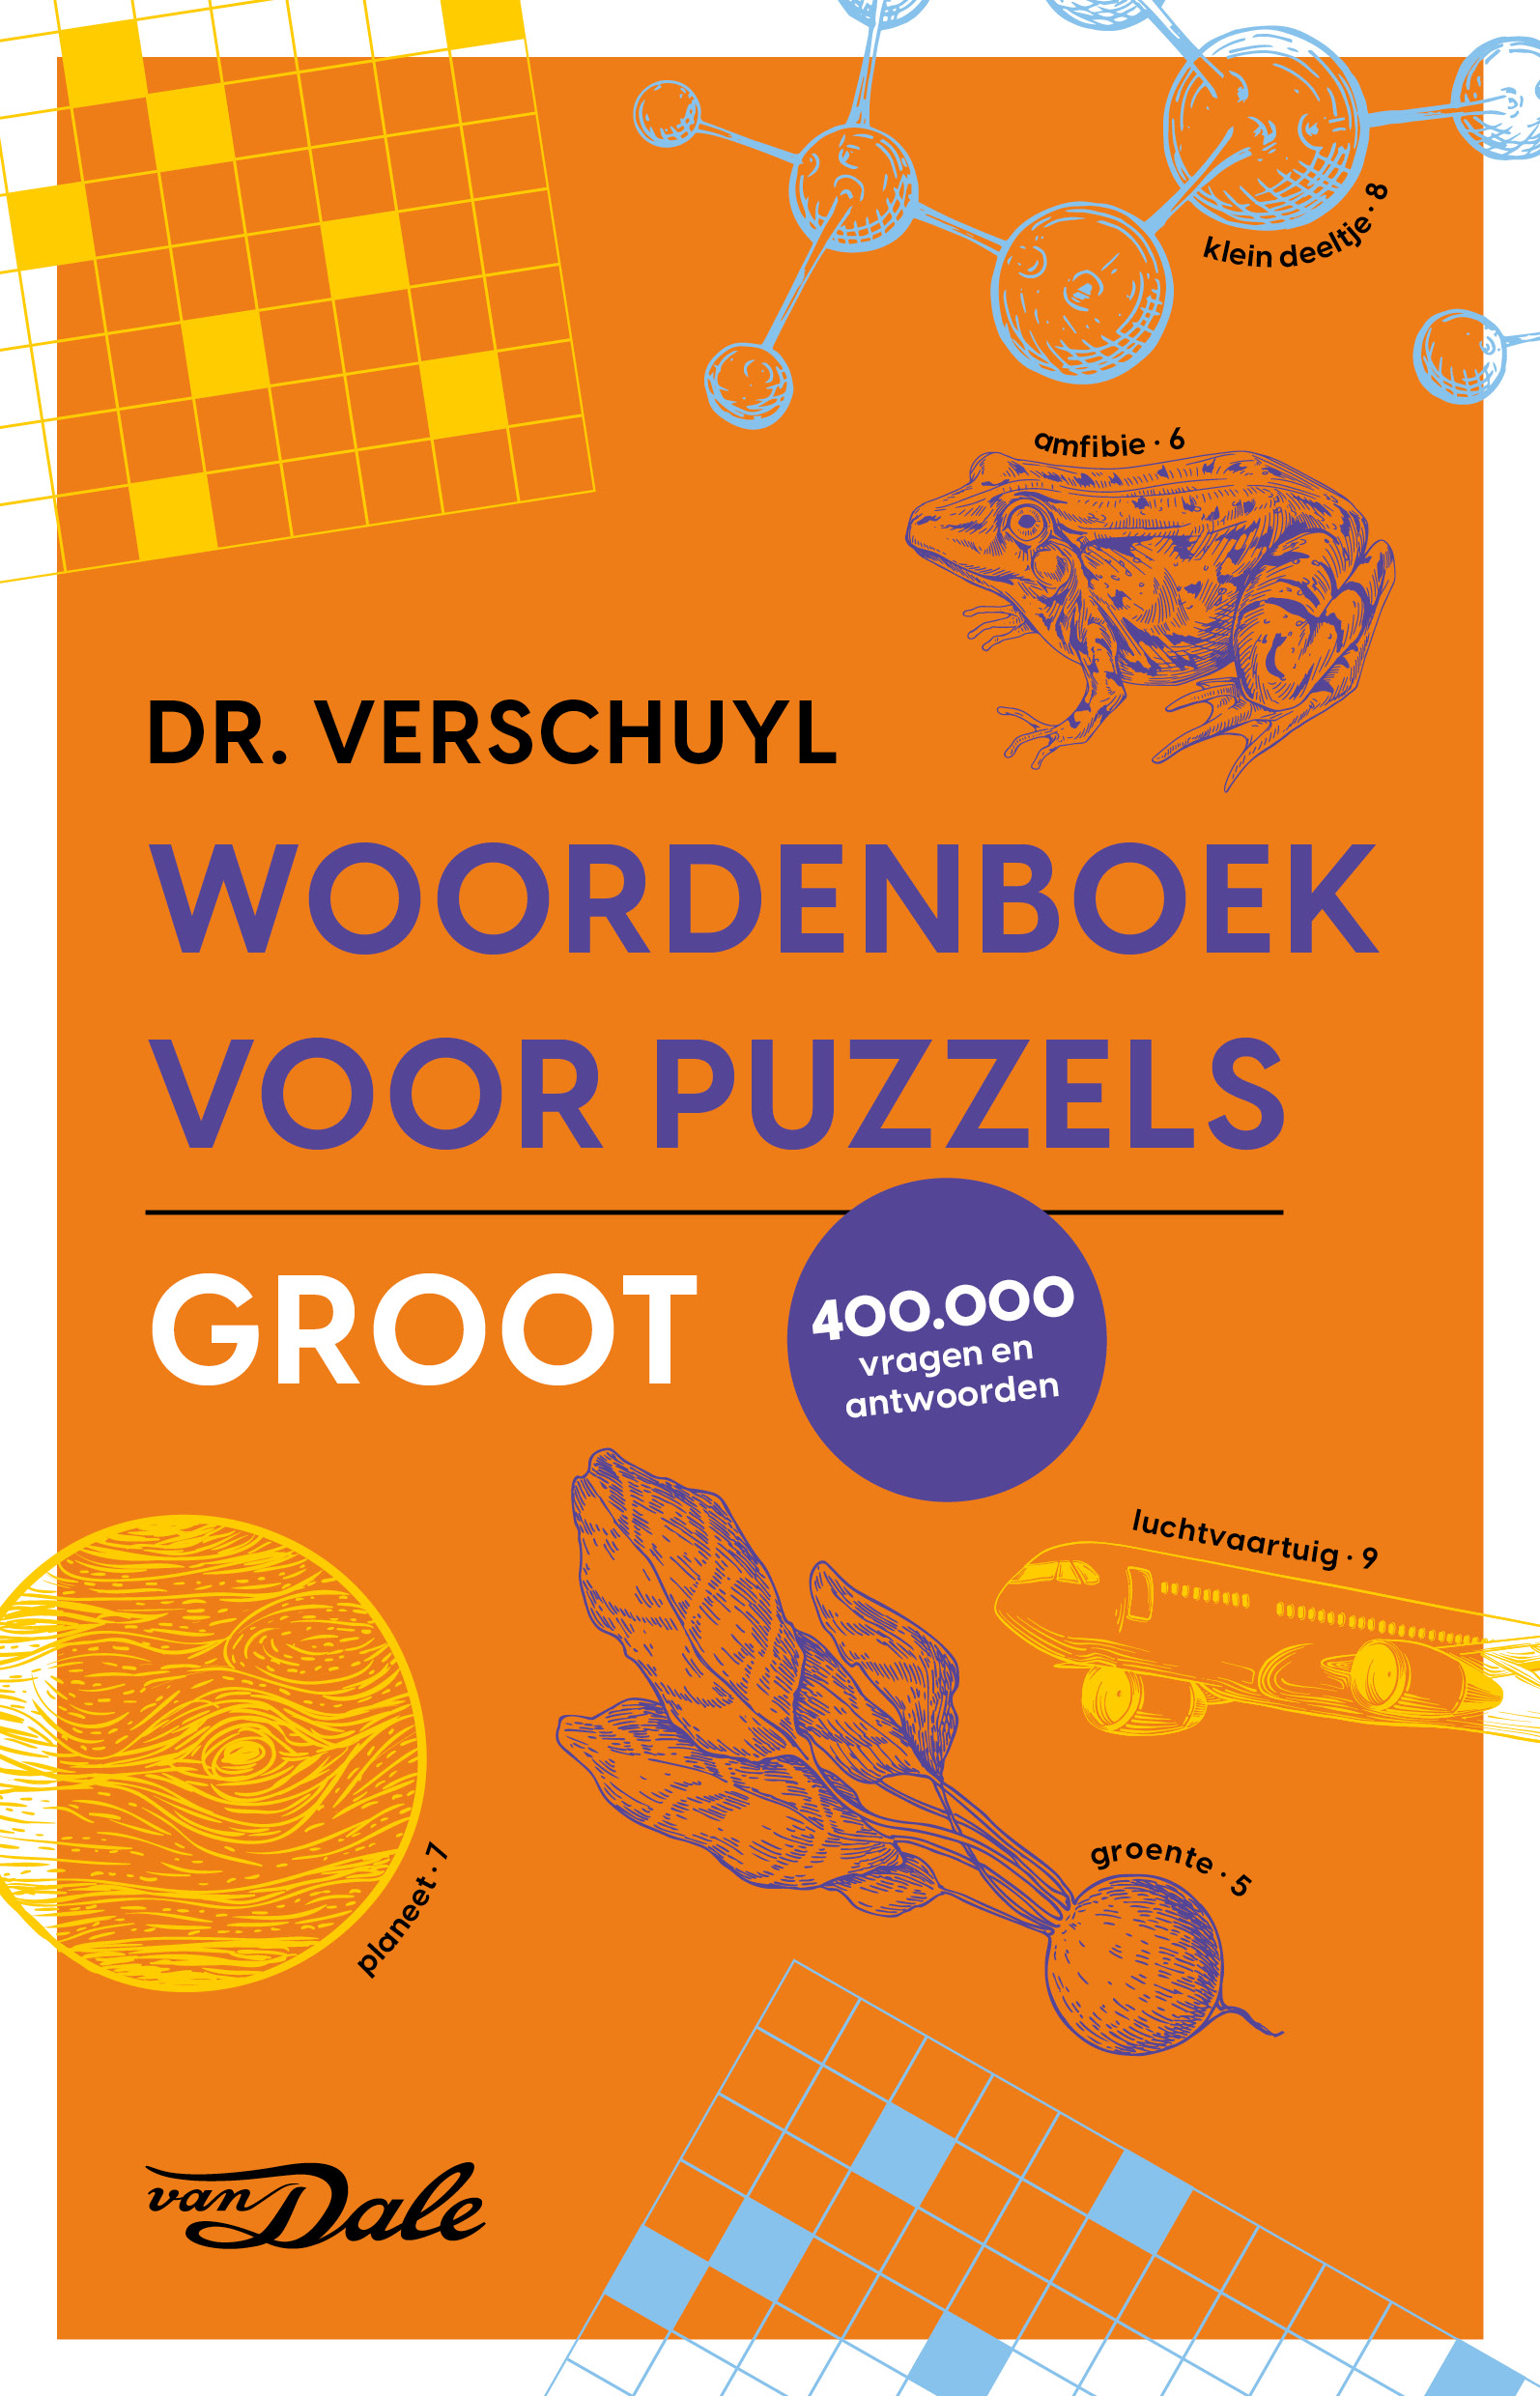 Van Dale Woordenboek voor puzzels - Groot